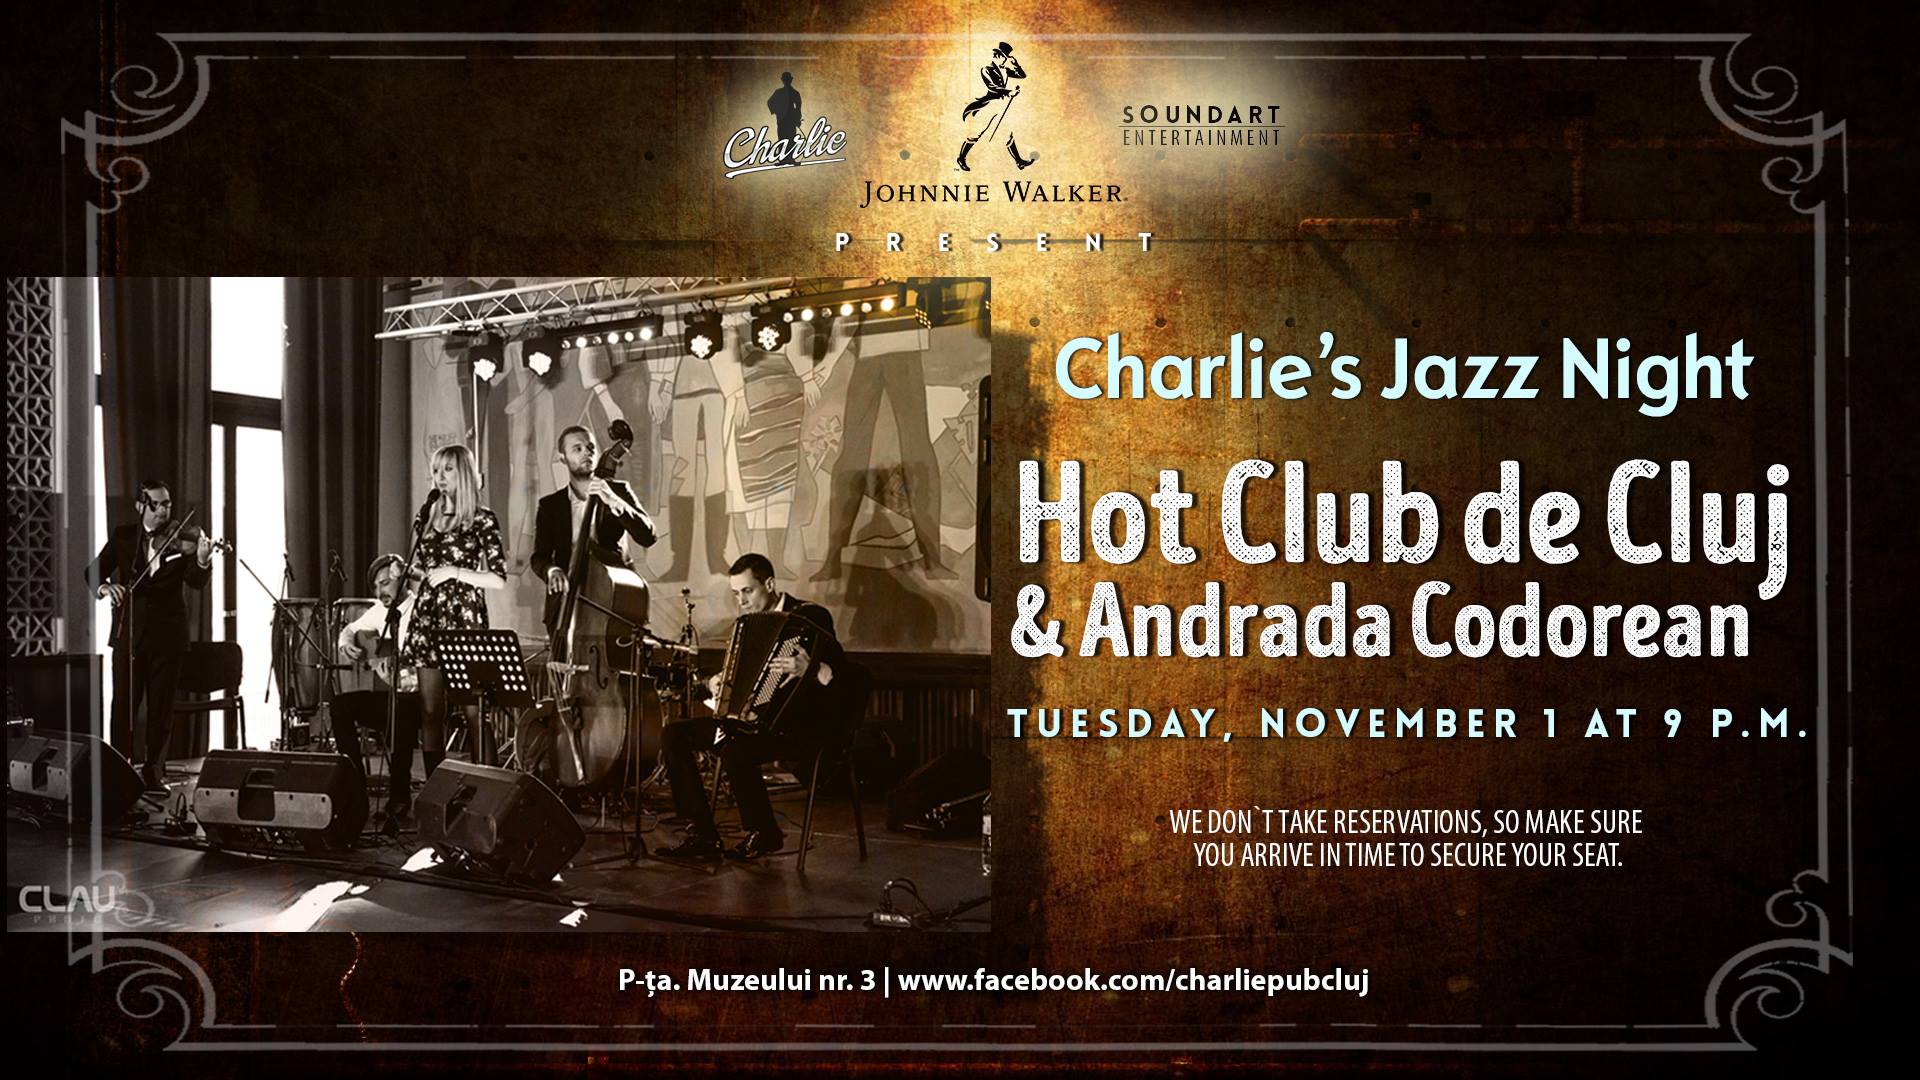 Hot Club de Cluj & Andrada Codorean @ Charlie